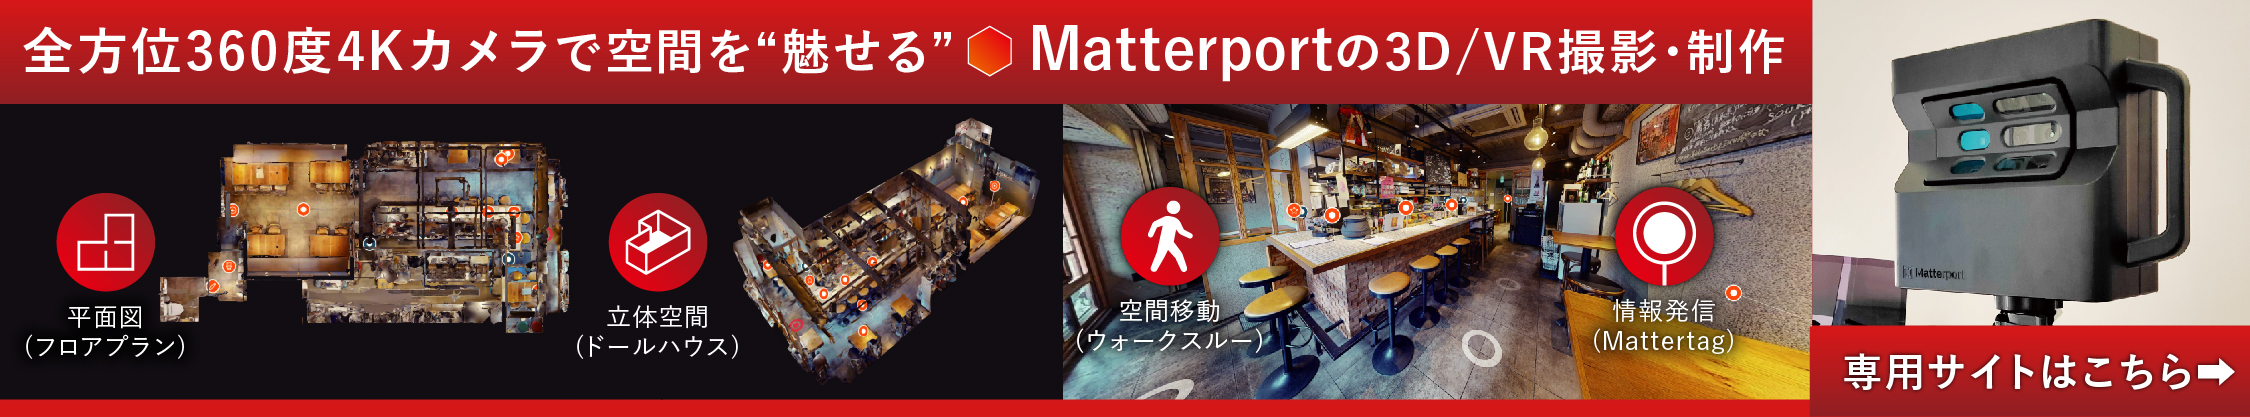 Matterportの3D/VR撮影・制作